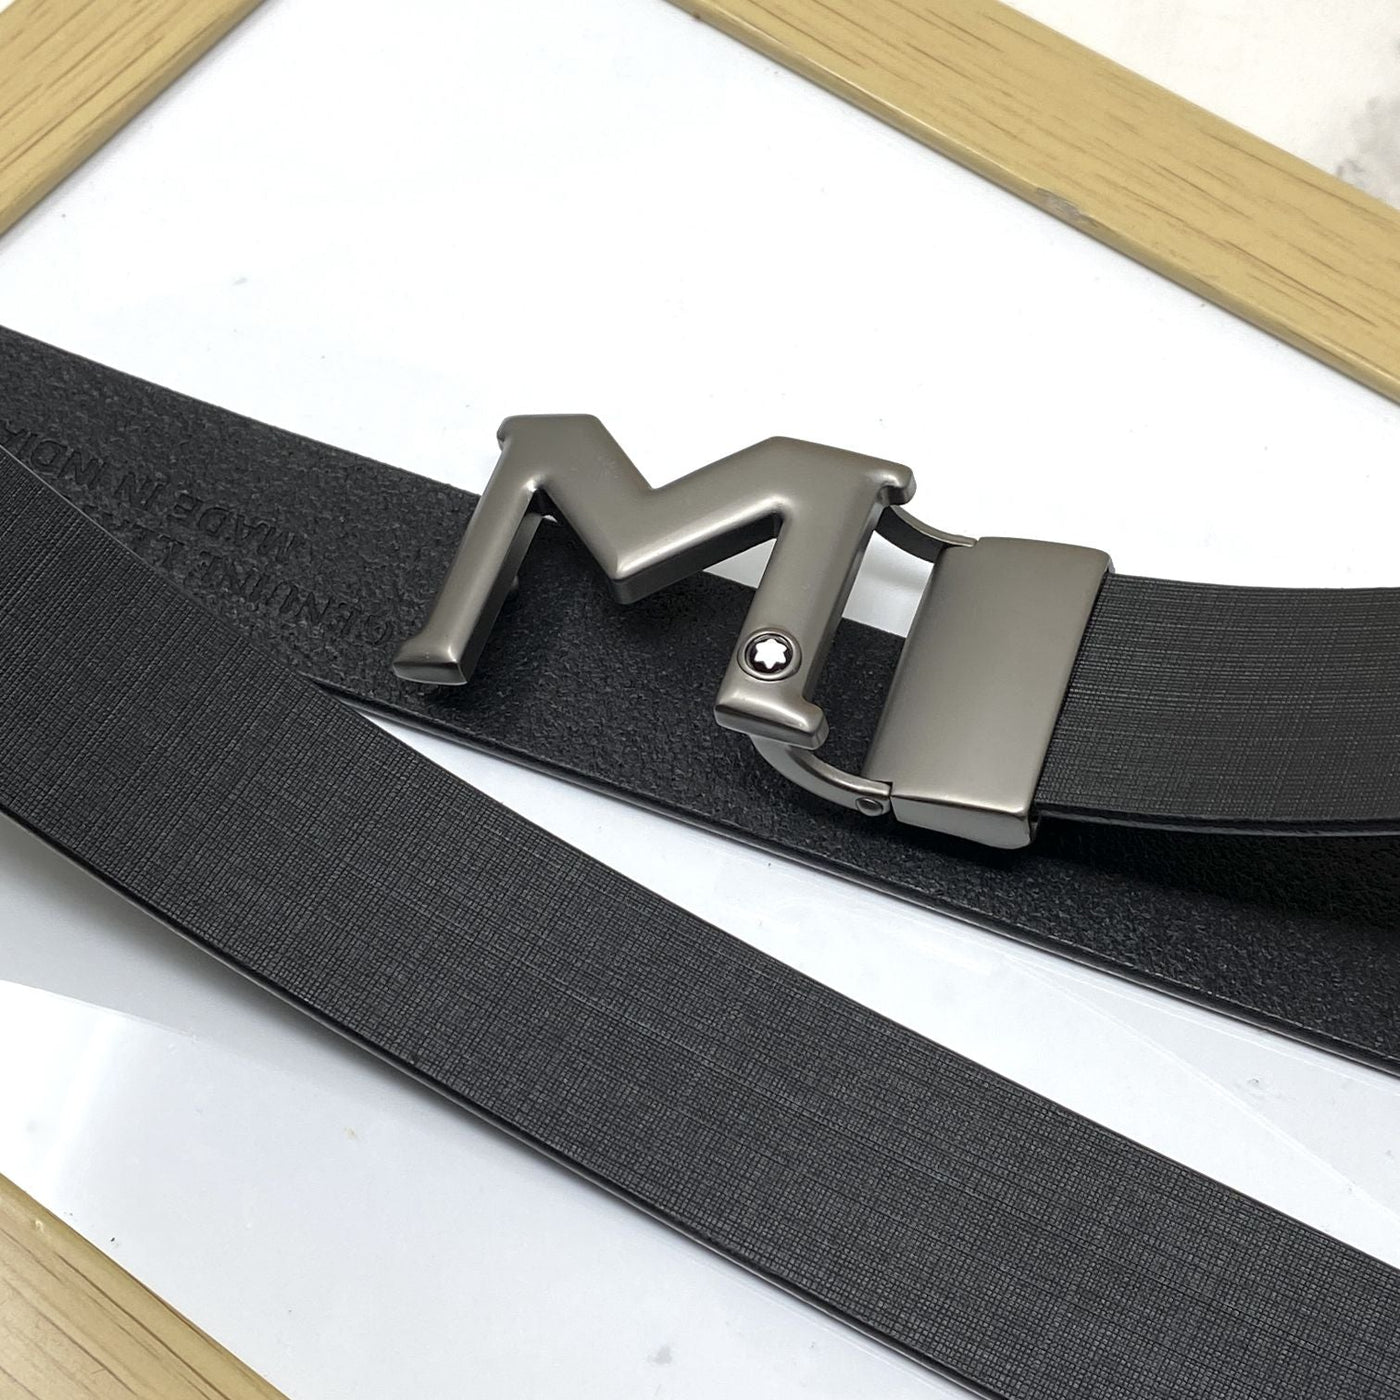 M-Pattern Leather Strap Belt -UniqueandClassy